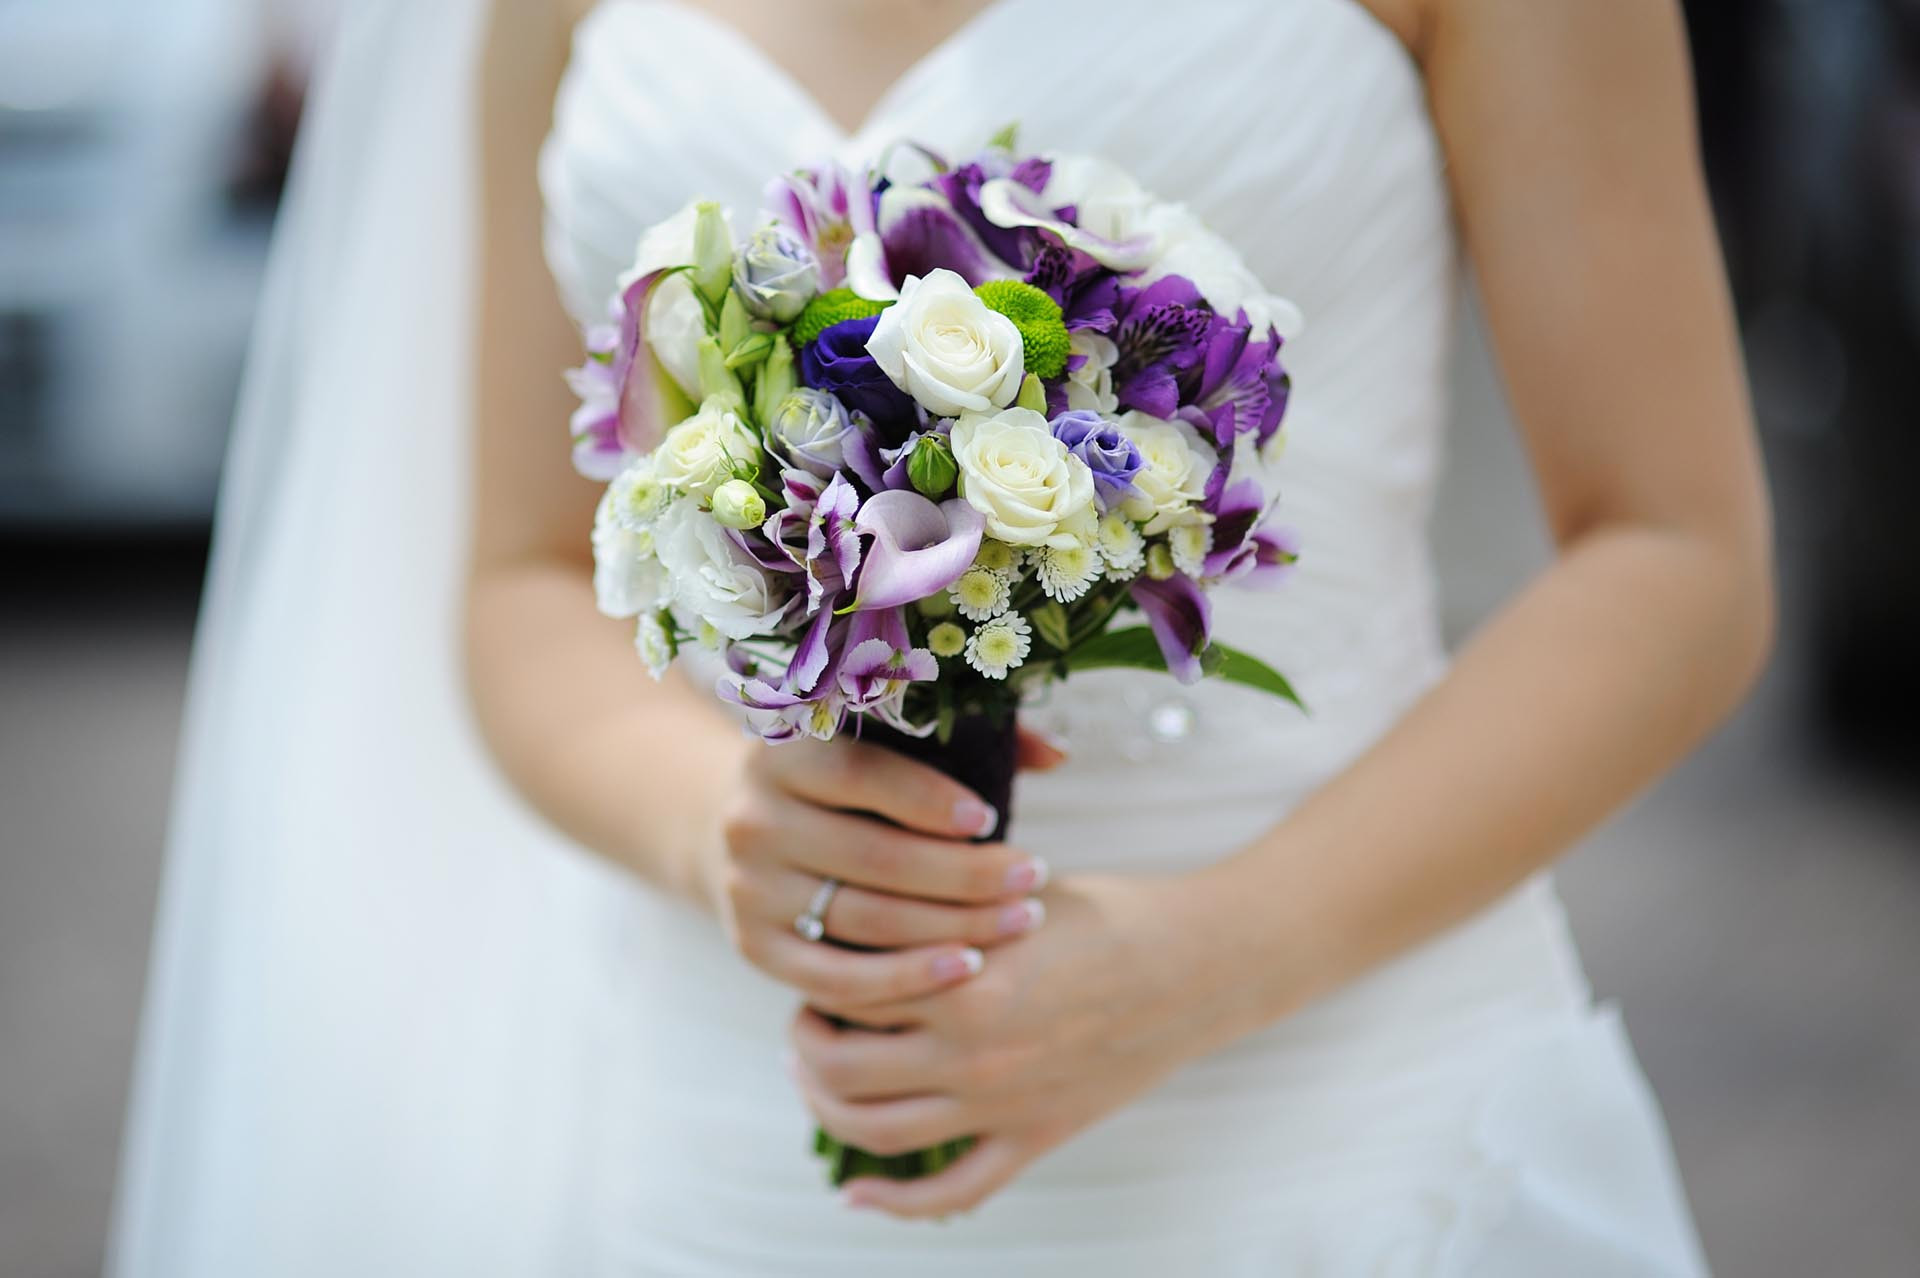 Brautstrauß Lila
 Brautstrauß in Lila und Weiß Heiraten mit braut